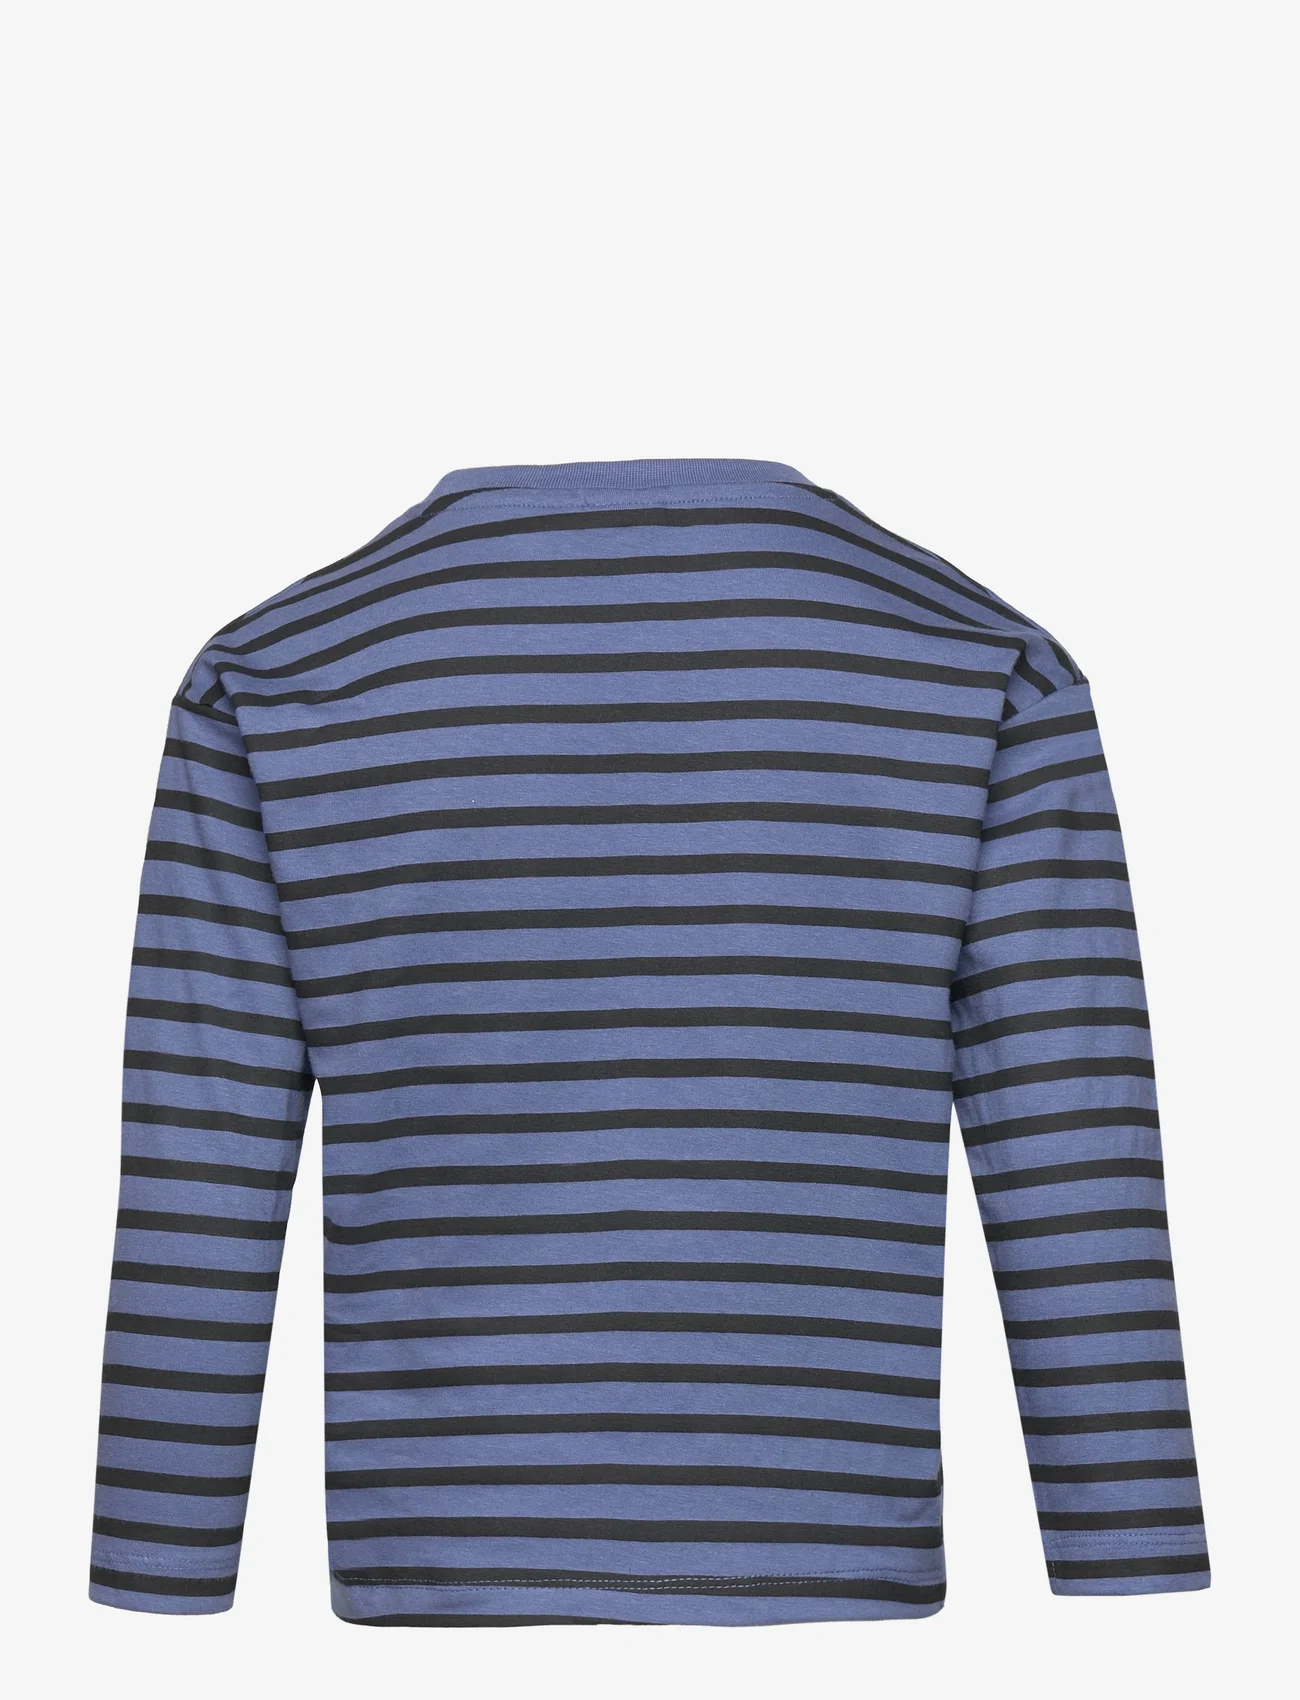 Peppa Pig - T-shirt ML - pitkähihaiset t-paidat - blue - 1